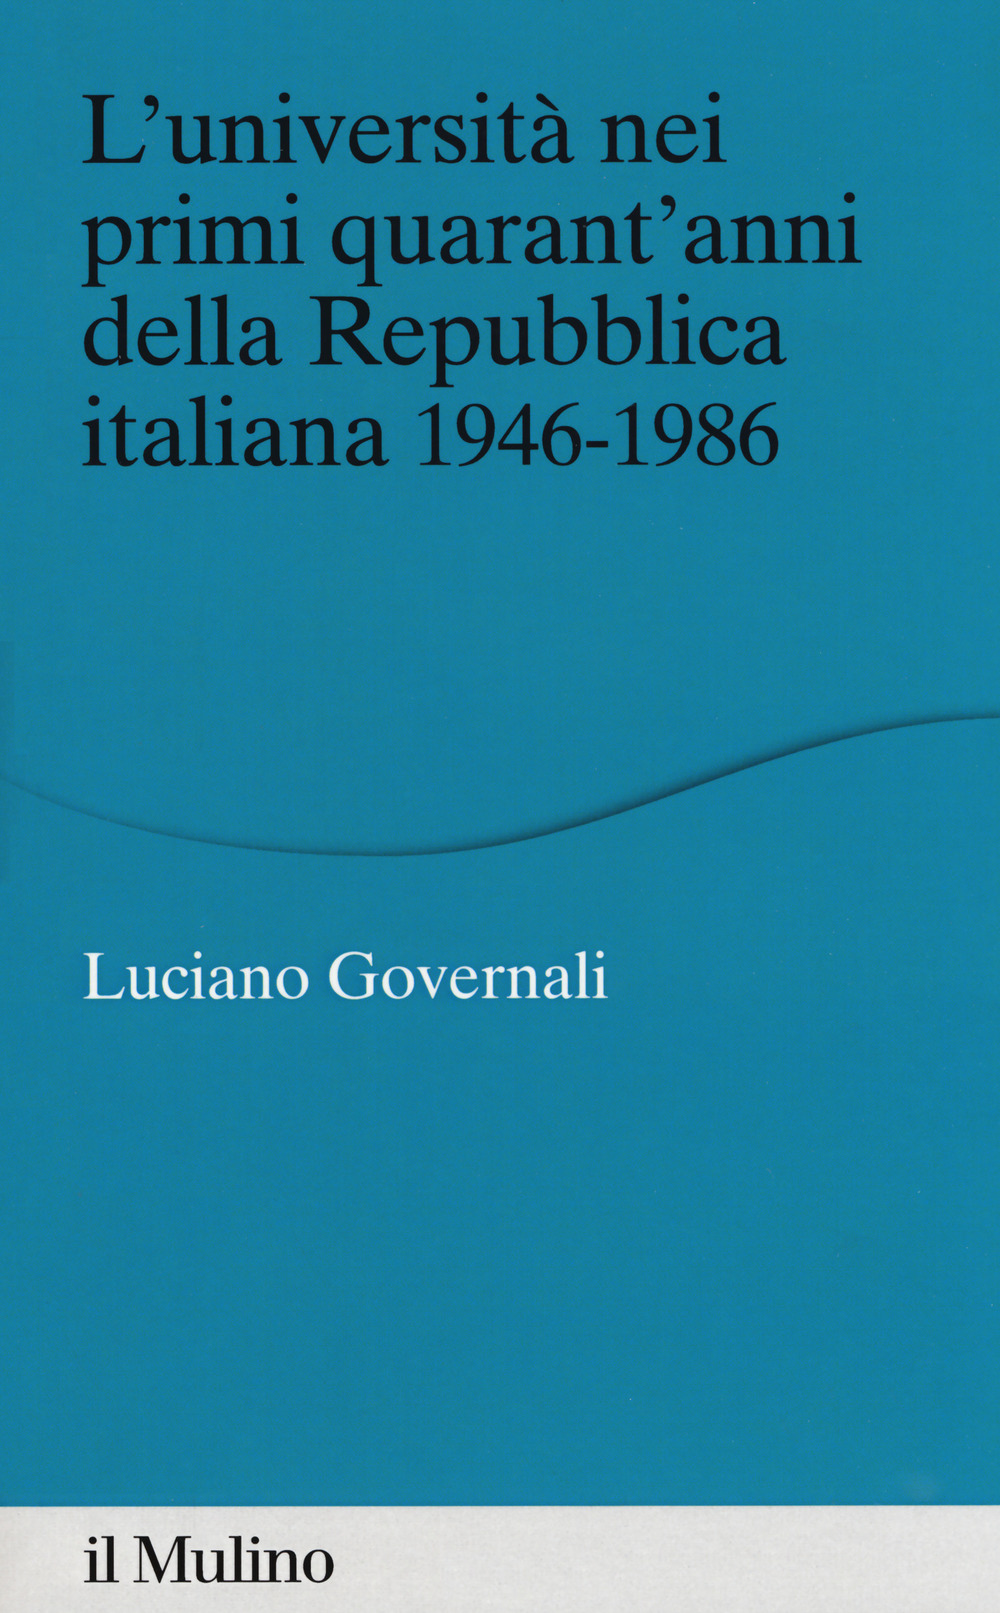 Image of L' università nei primi quarant'anni della Repubblica italiana 1946-1986